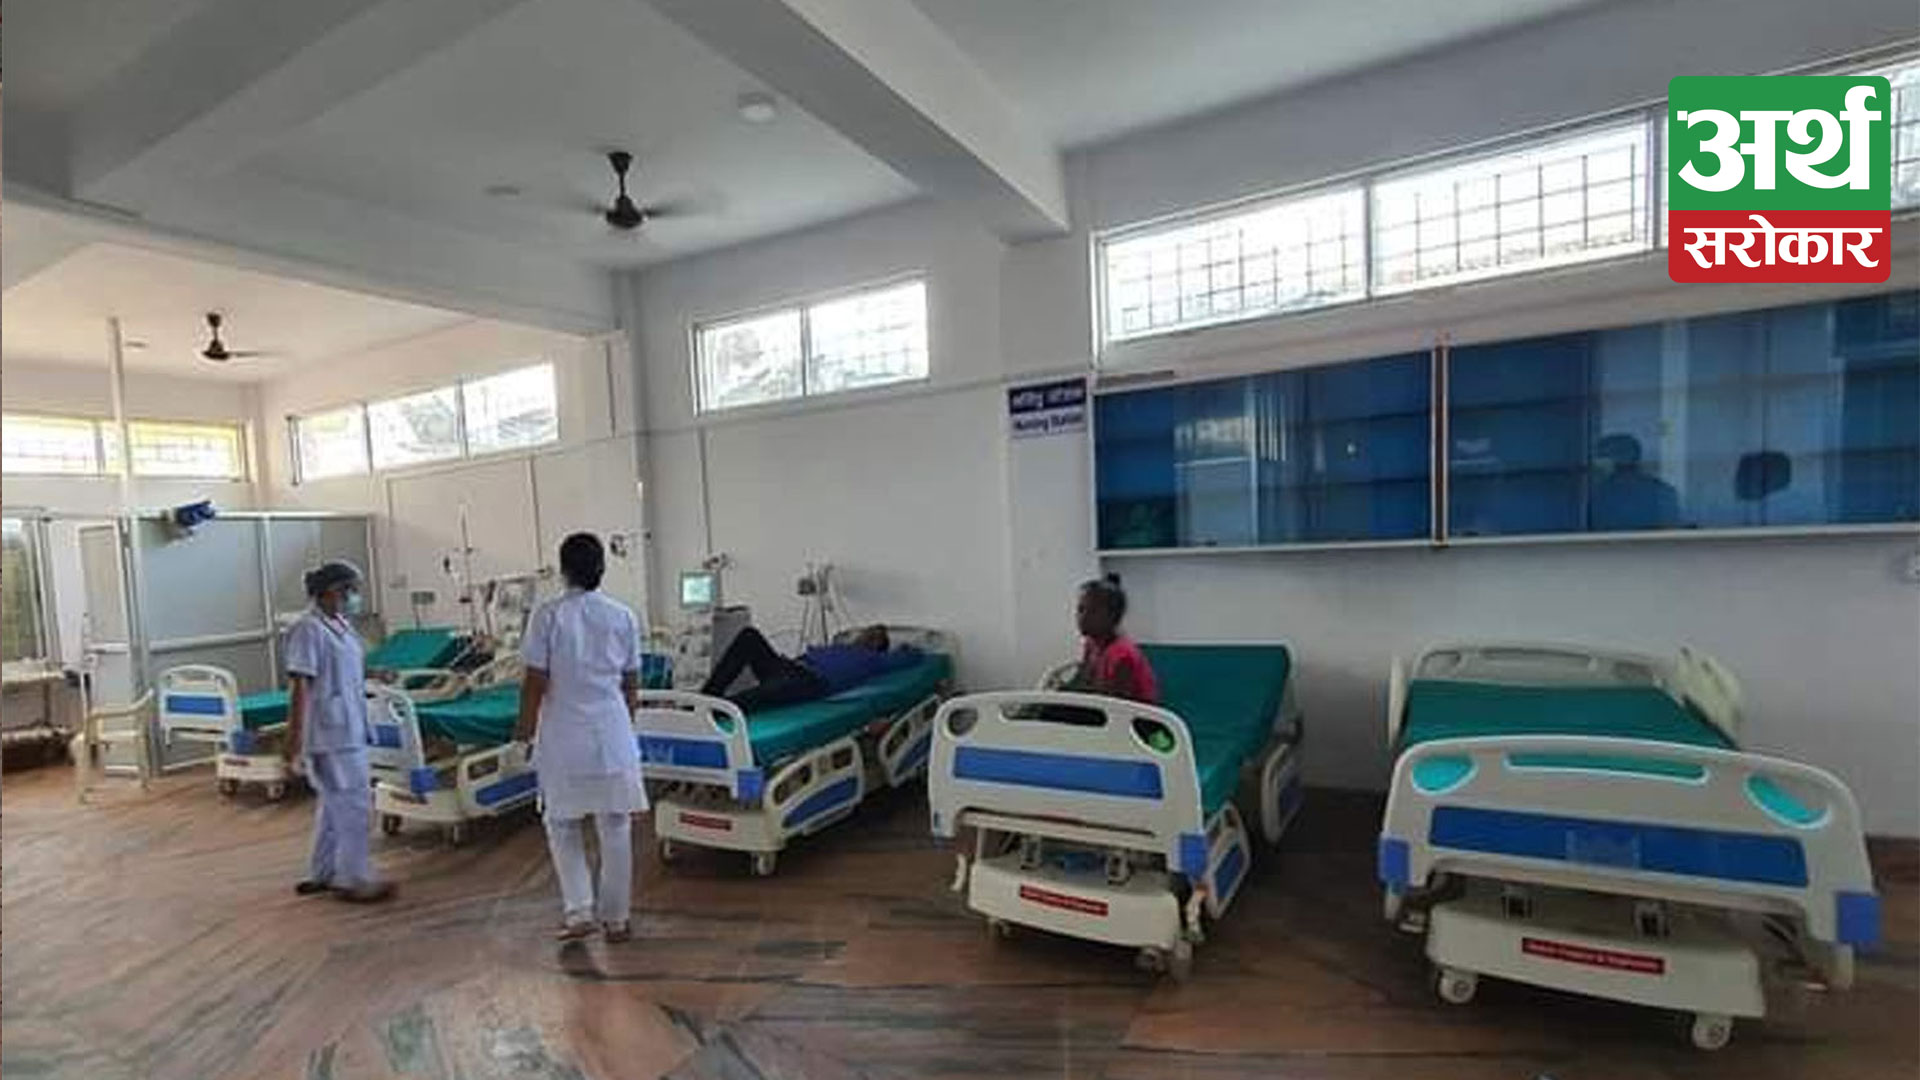 सेती प्रादेशिक अस्पतालमा डायलासिस सेवा विस्तार, बिरामीको उपचार सेवामा थप सहज